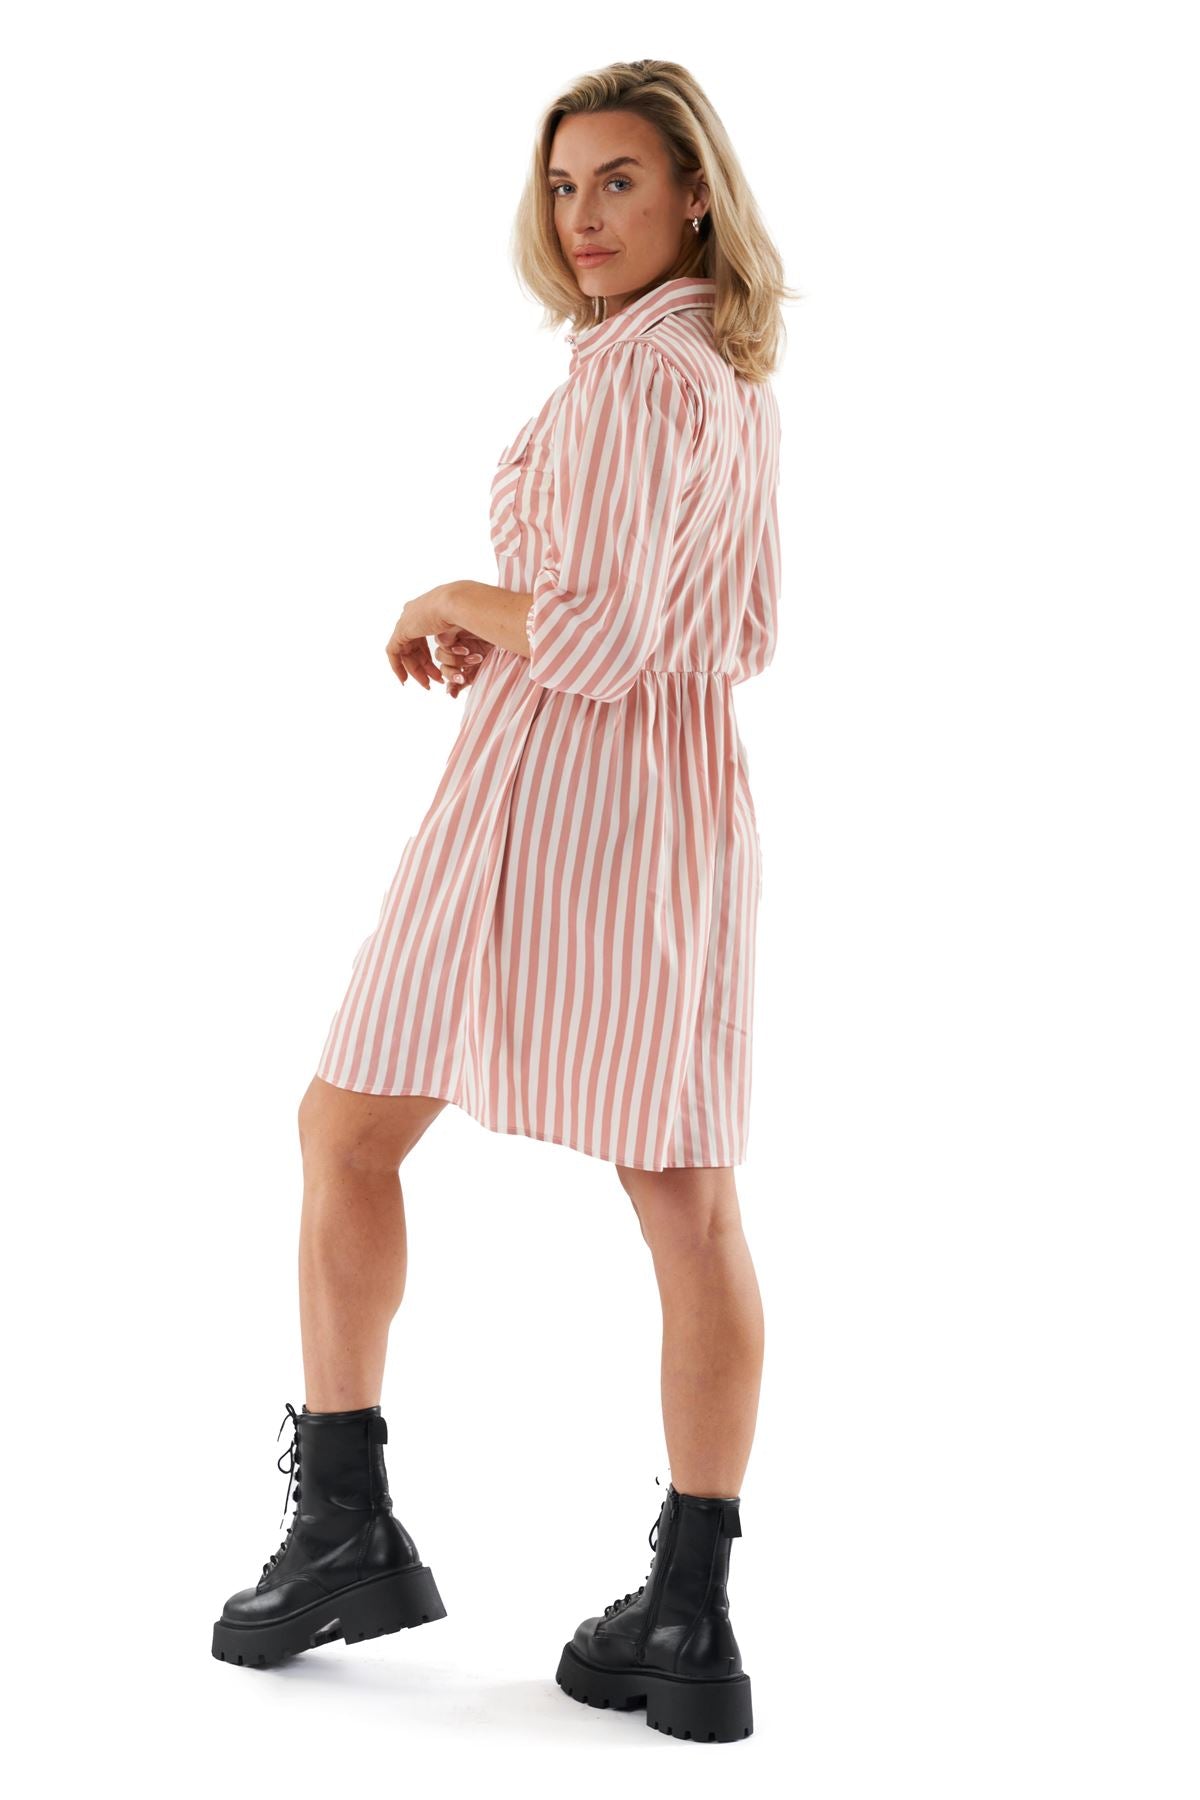 Hooch Womens Summer Mini Shirt Dress Patterned Button-Through 3/4 Sleeve Pockets